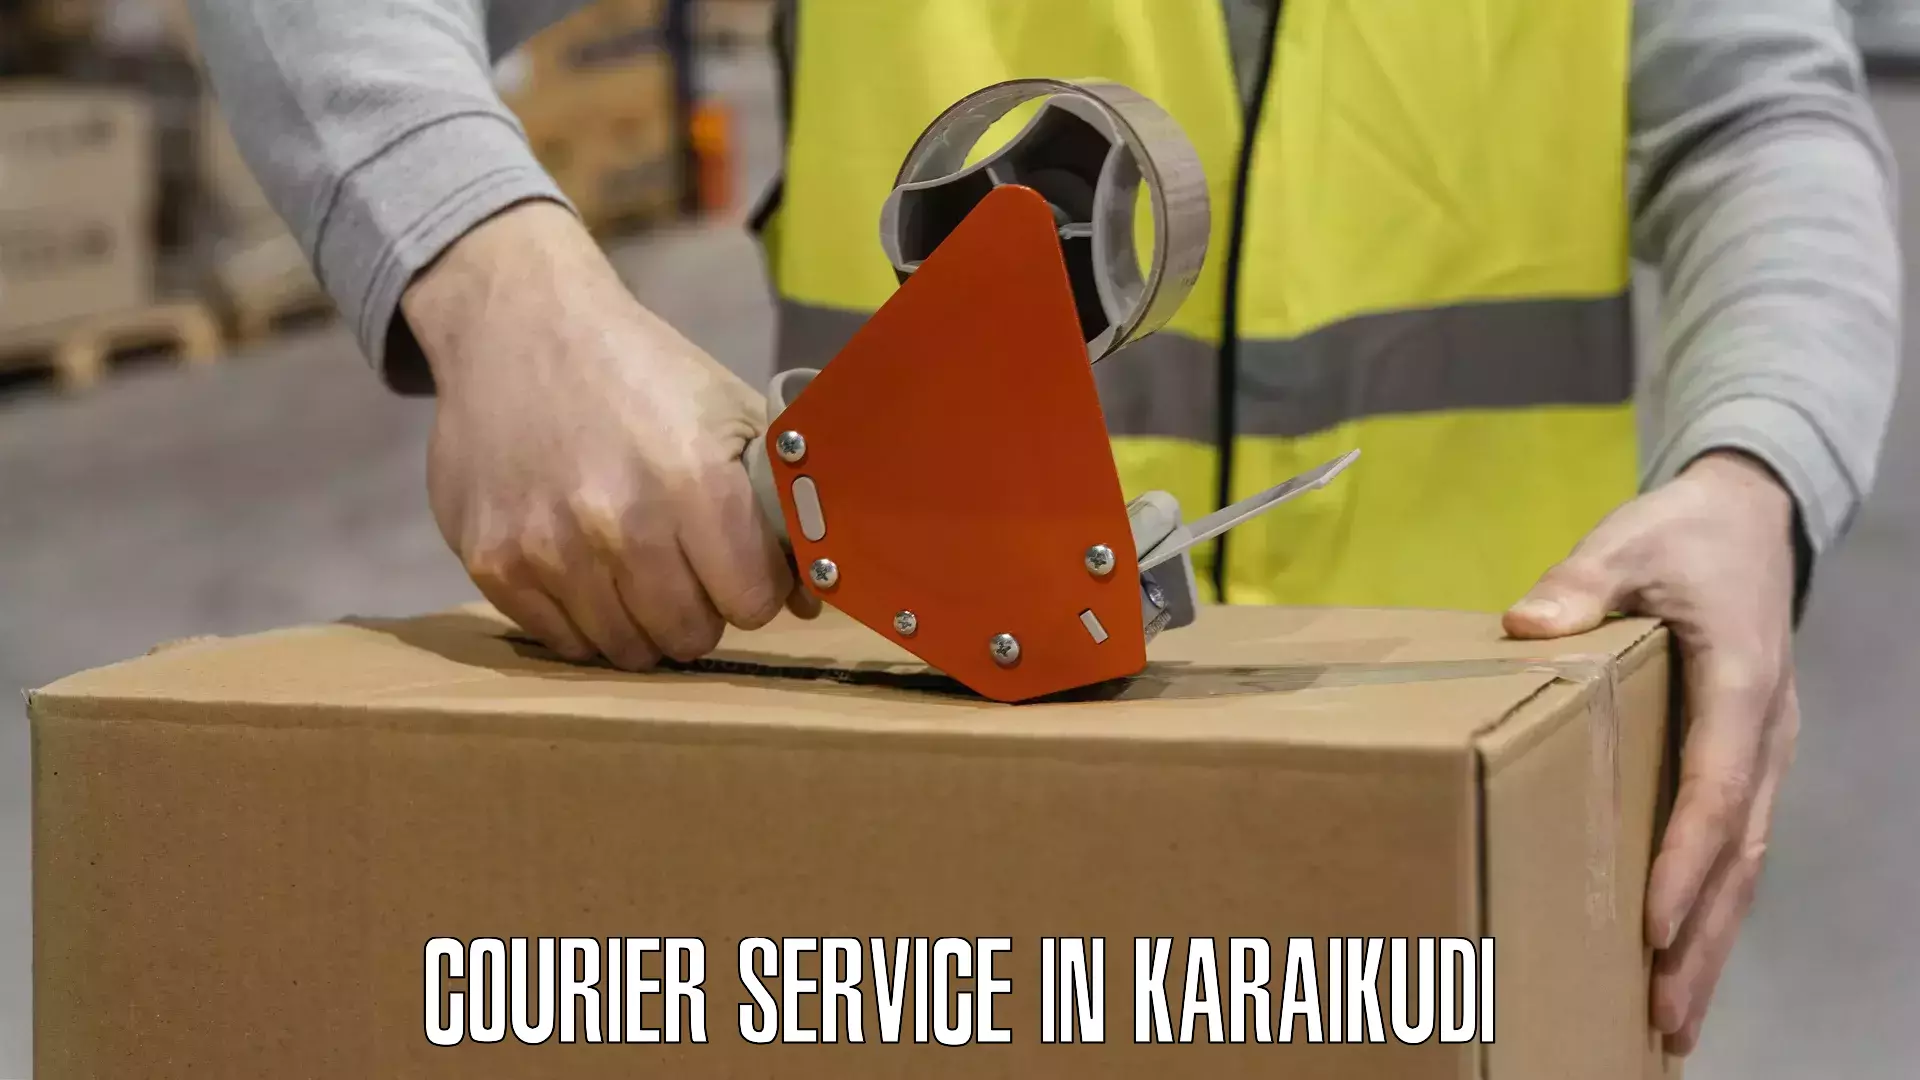 Logistics efficiency in Karaikudi